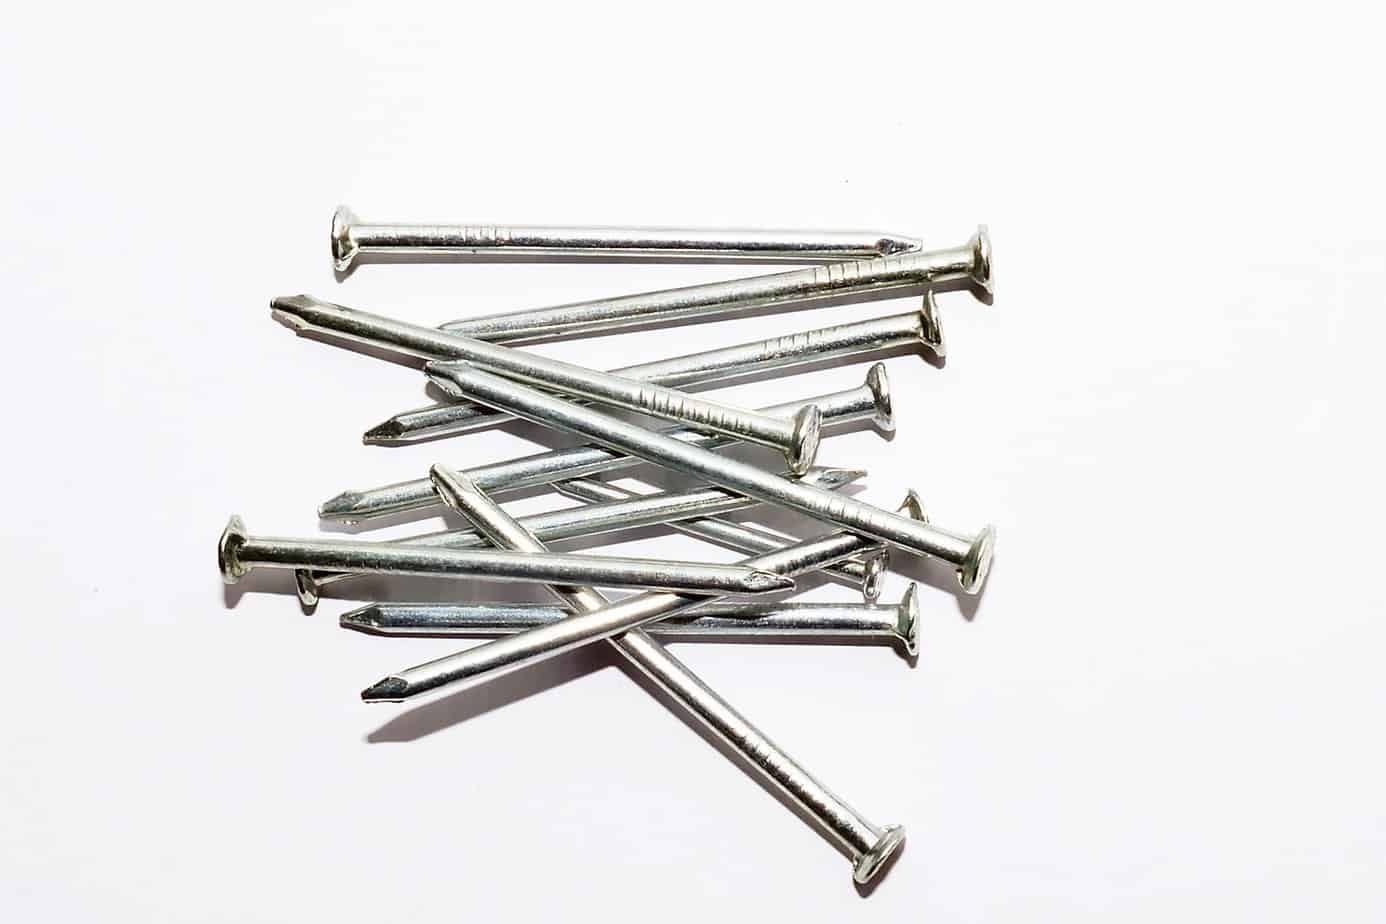 3. Nail in wood clip art - Shutterstock - wide 3